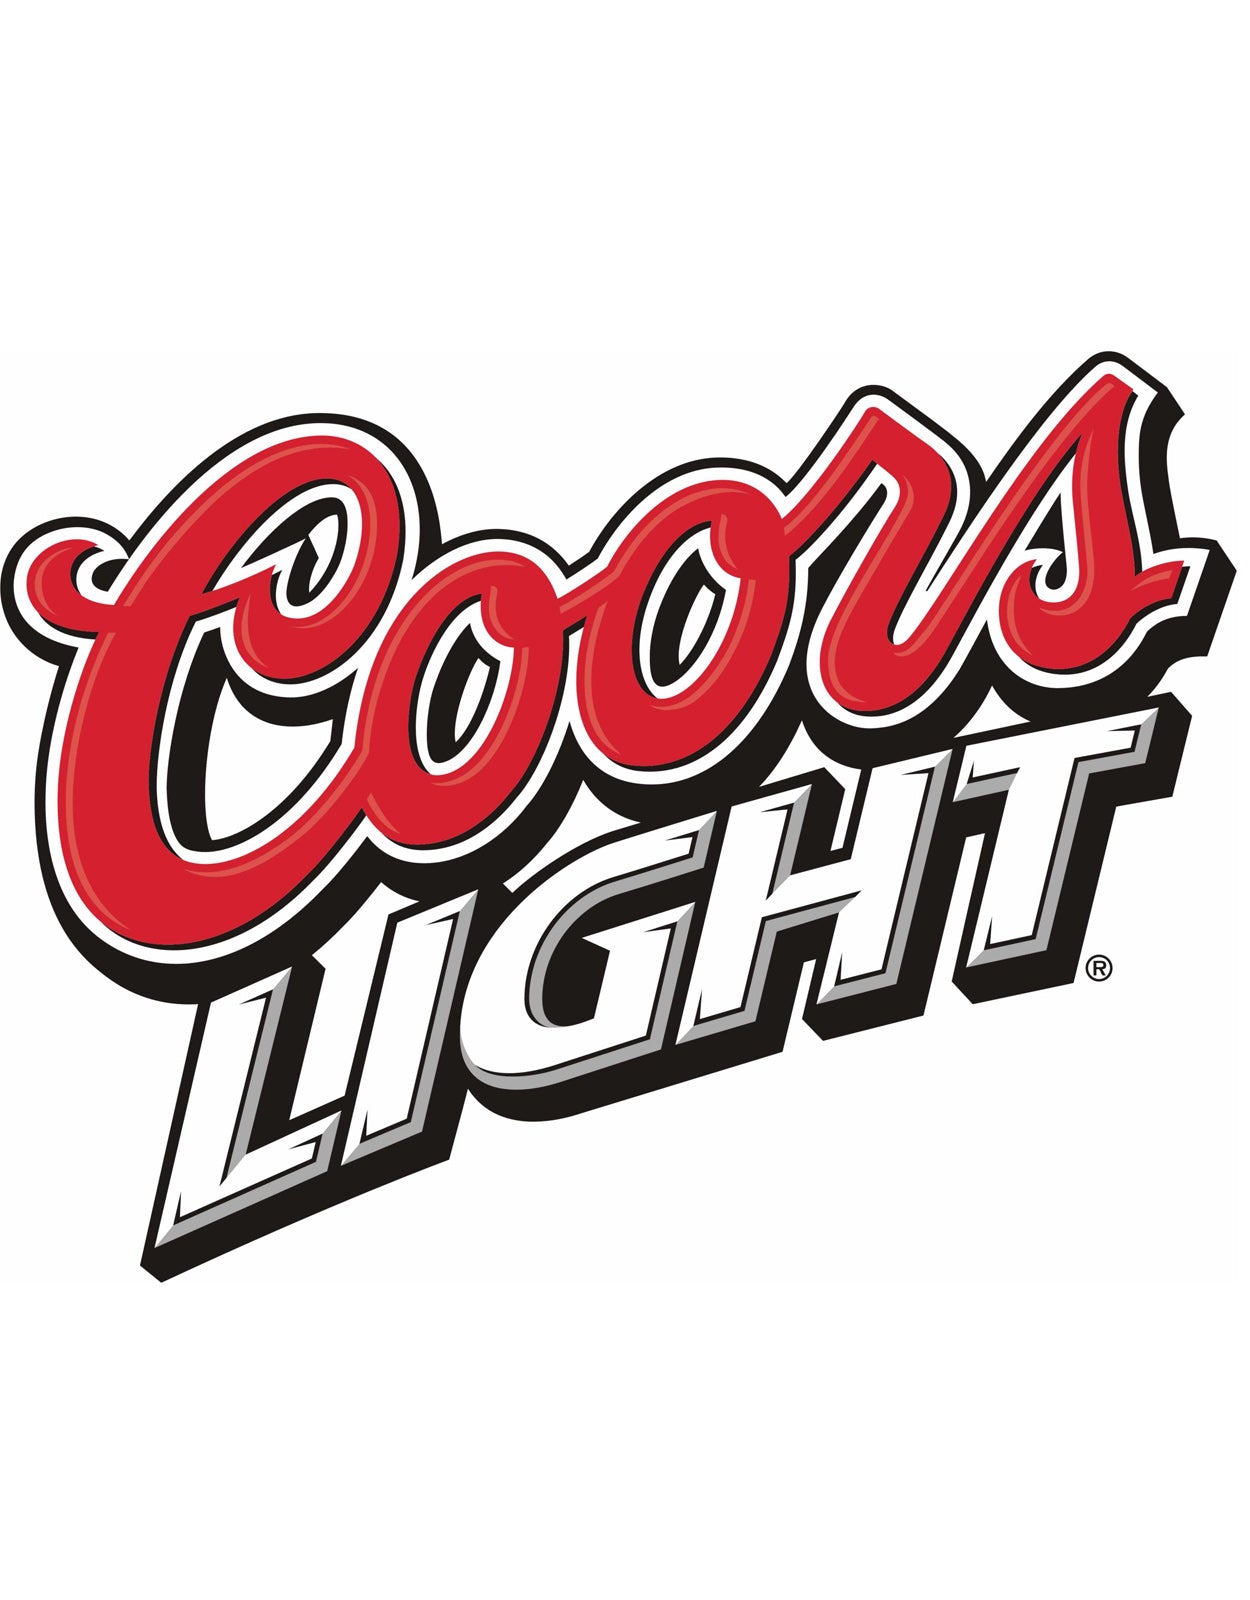 Coors Light - 59 Litre Keg